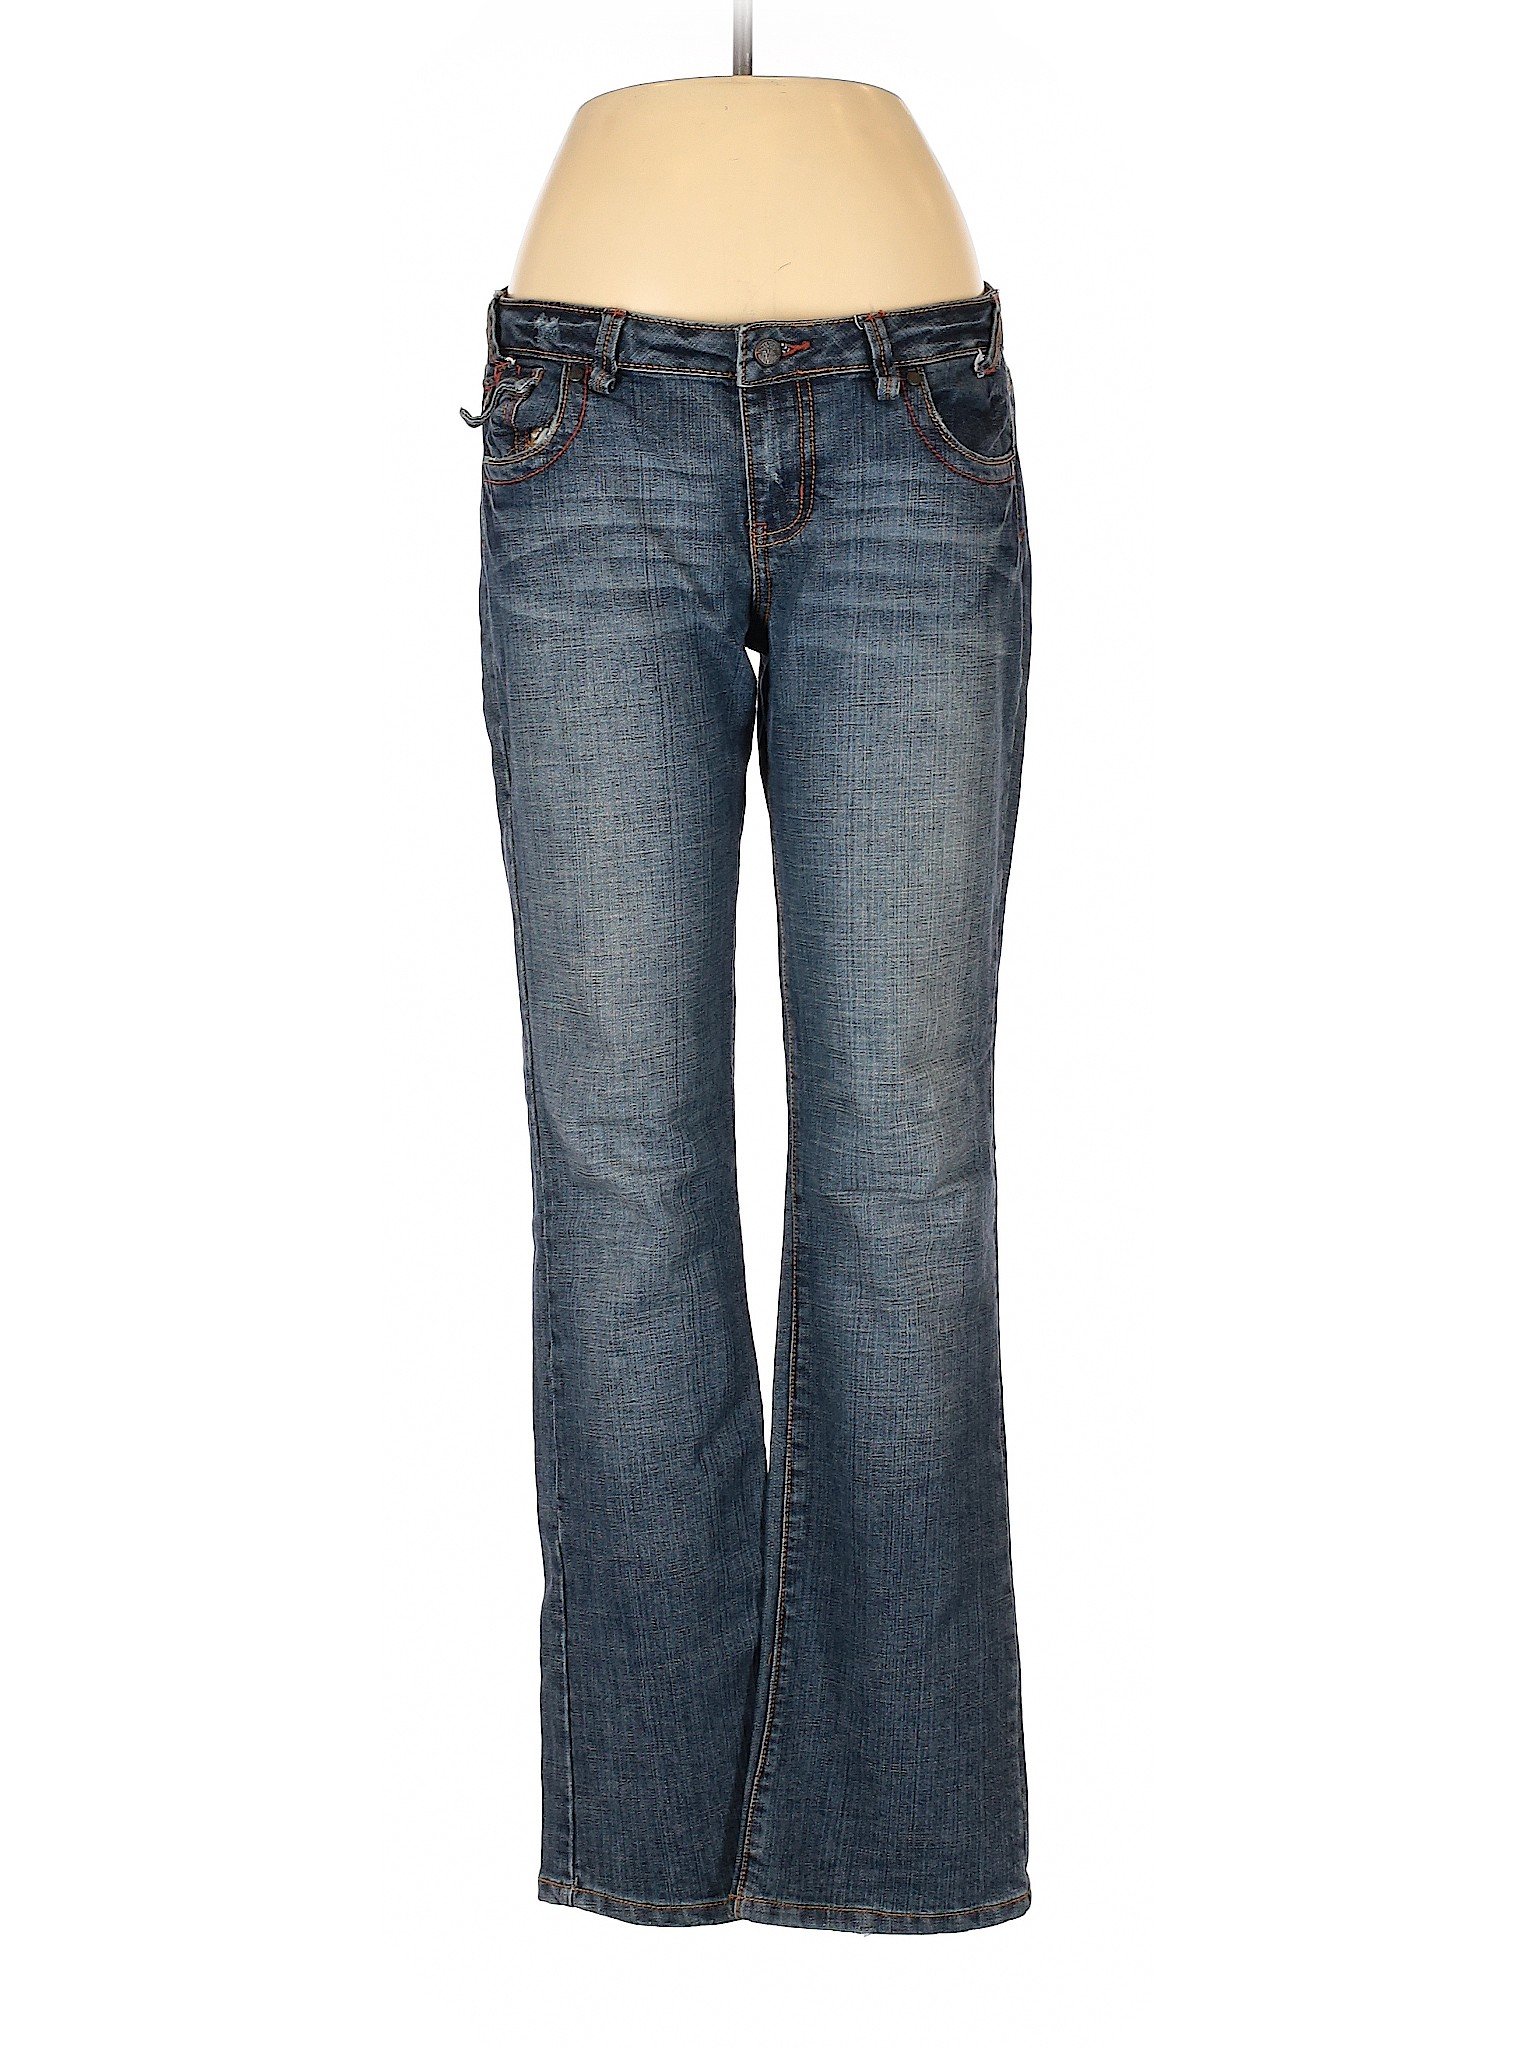 Hint Jeans Women Blue Jeans 11 | eBay